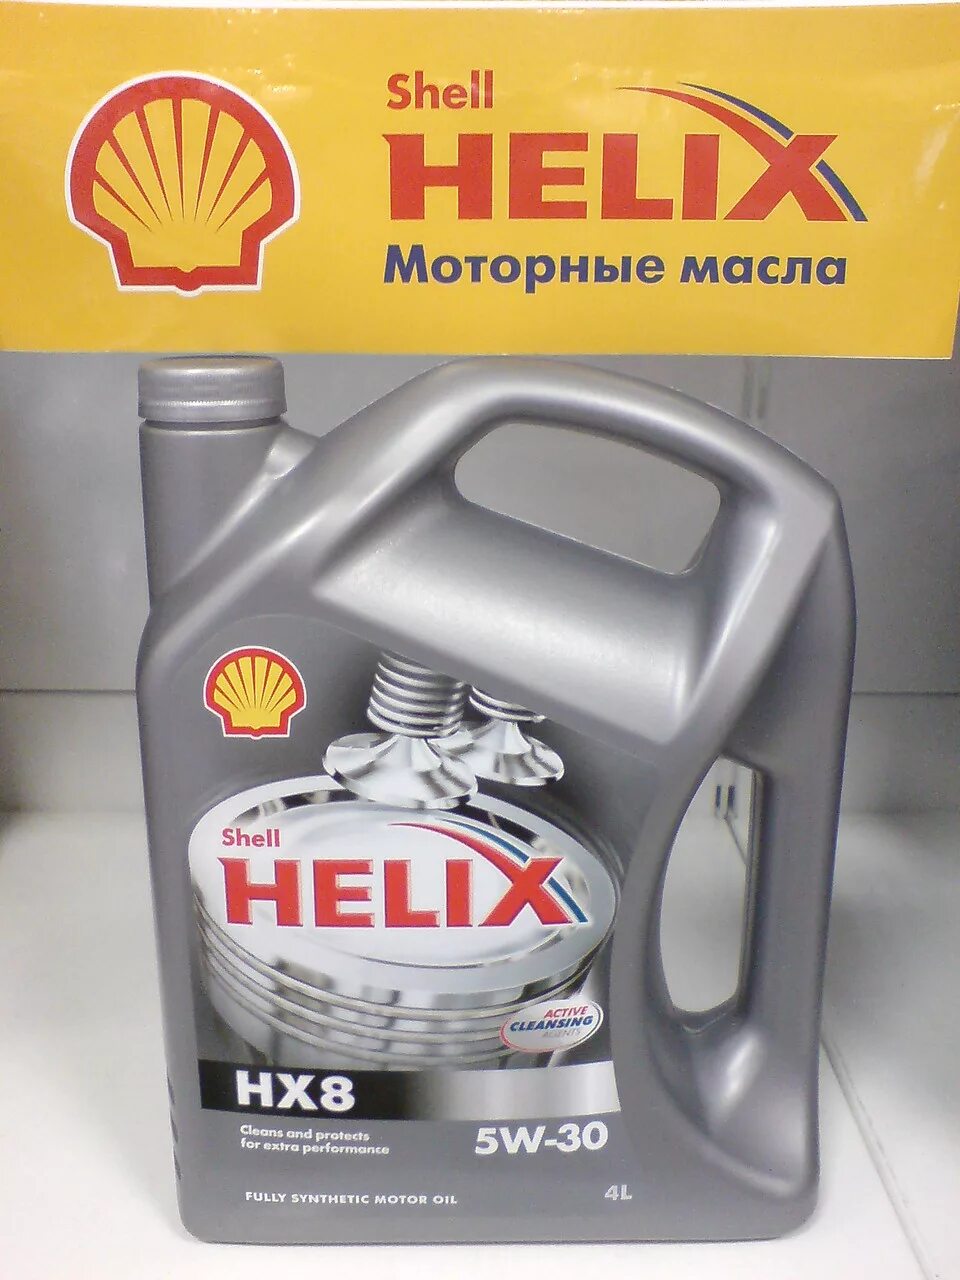 Моторное масло Шелл Хеликс 5w30. Масло моторное 5w30 синтетика Шелл Хеликс. Синтетическое моторное масло Shell Helix hx8 Synthetic 5w-30, 4 л. Shell моторное 5w30 hx8. Шелл масло сайт